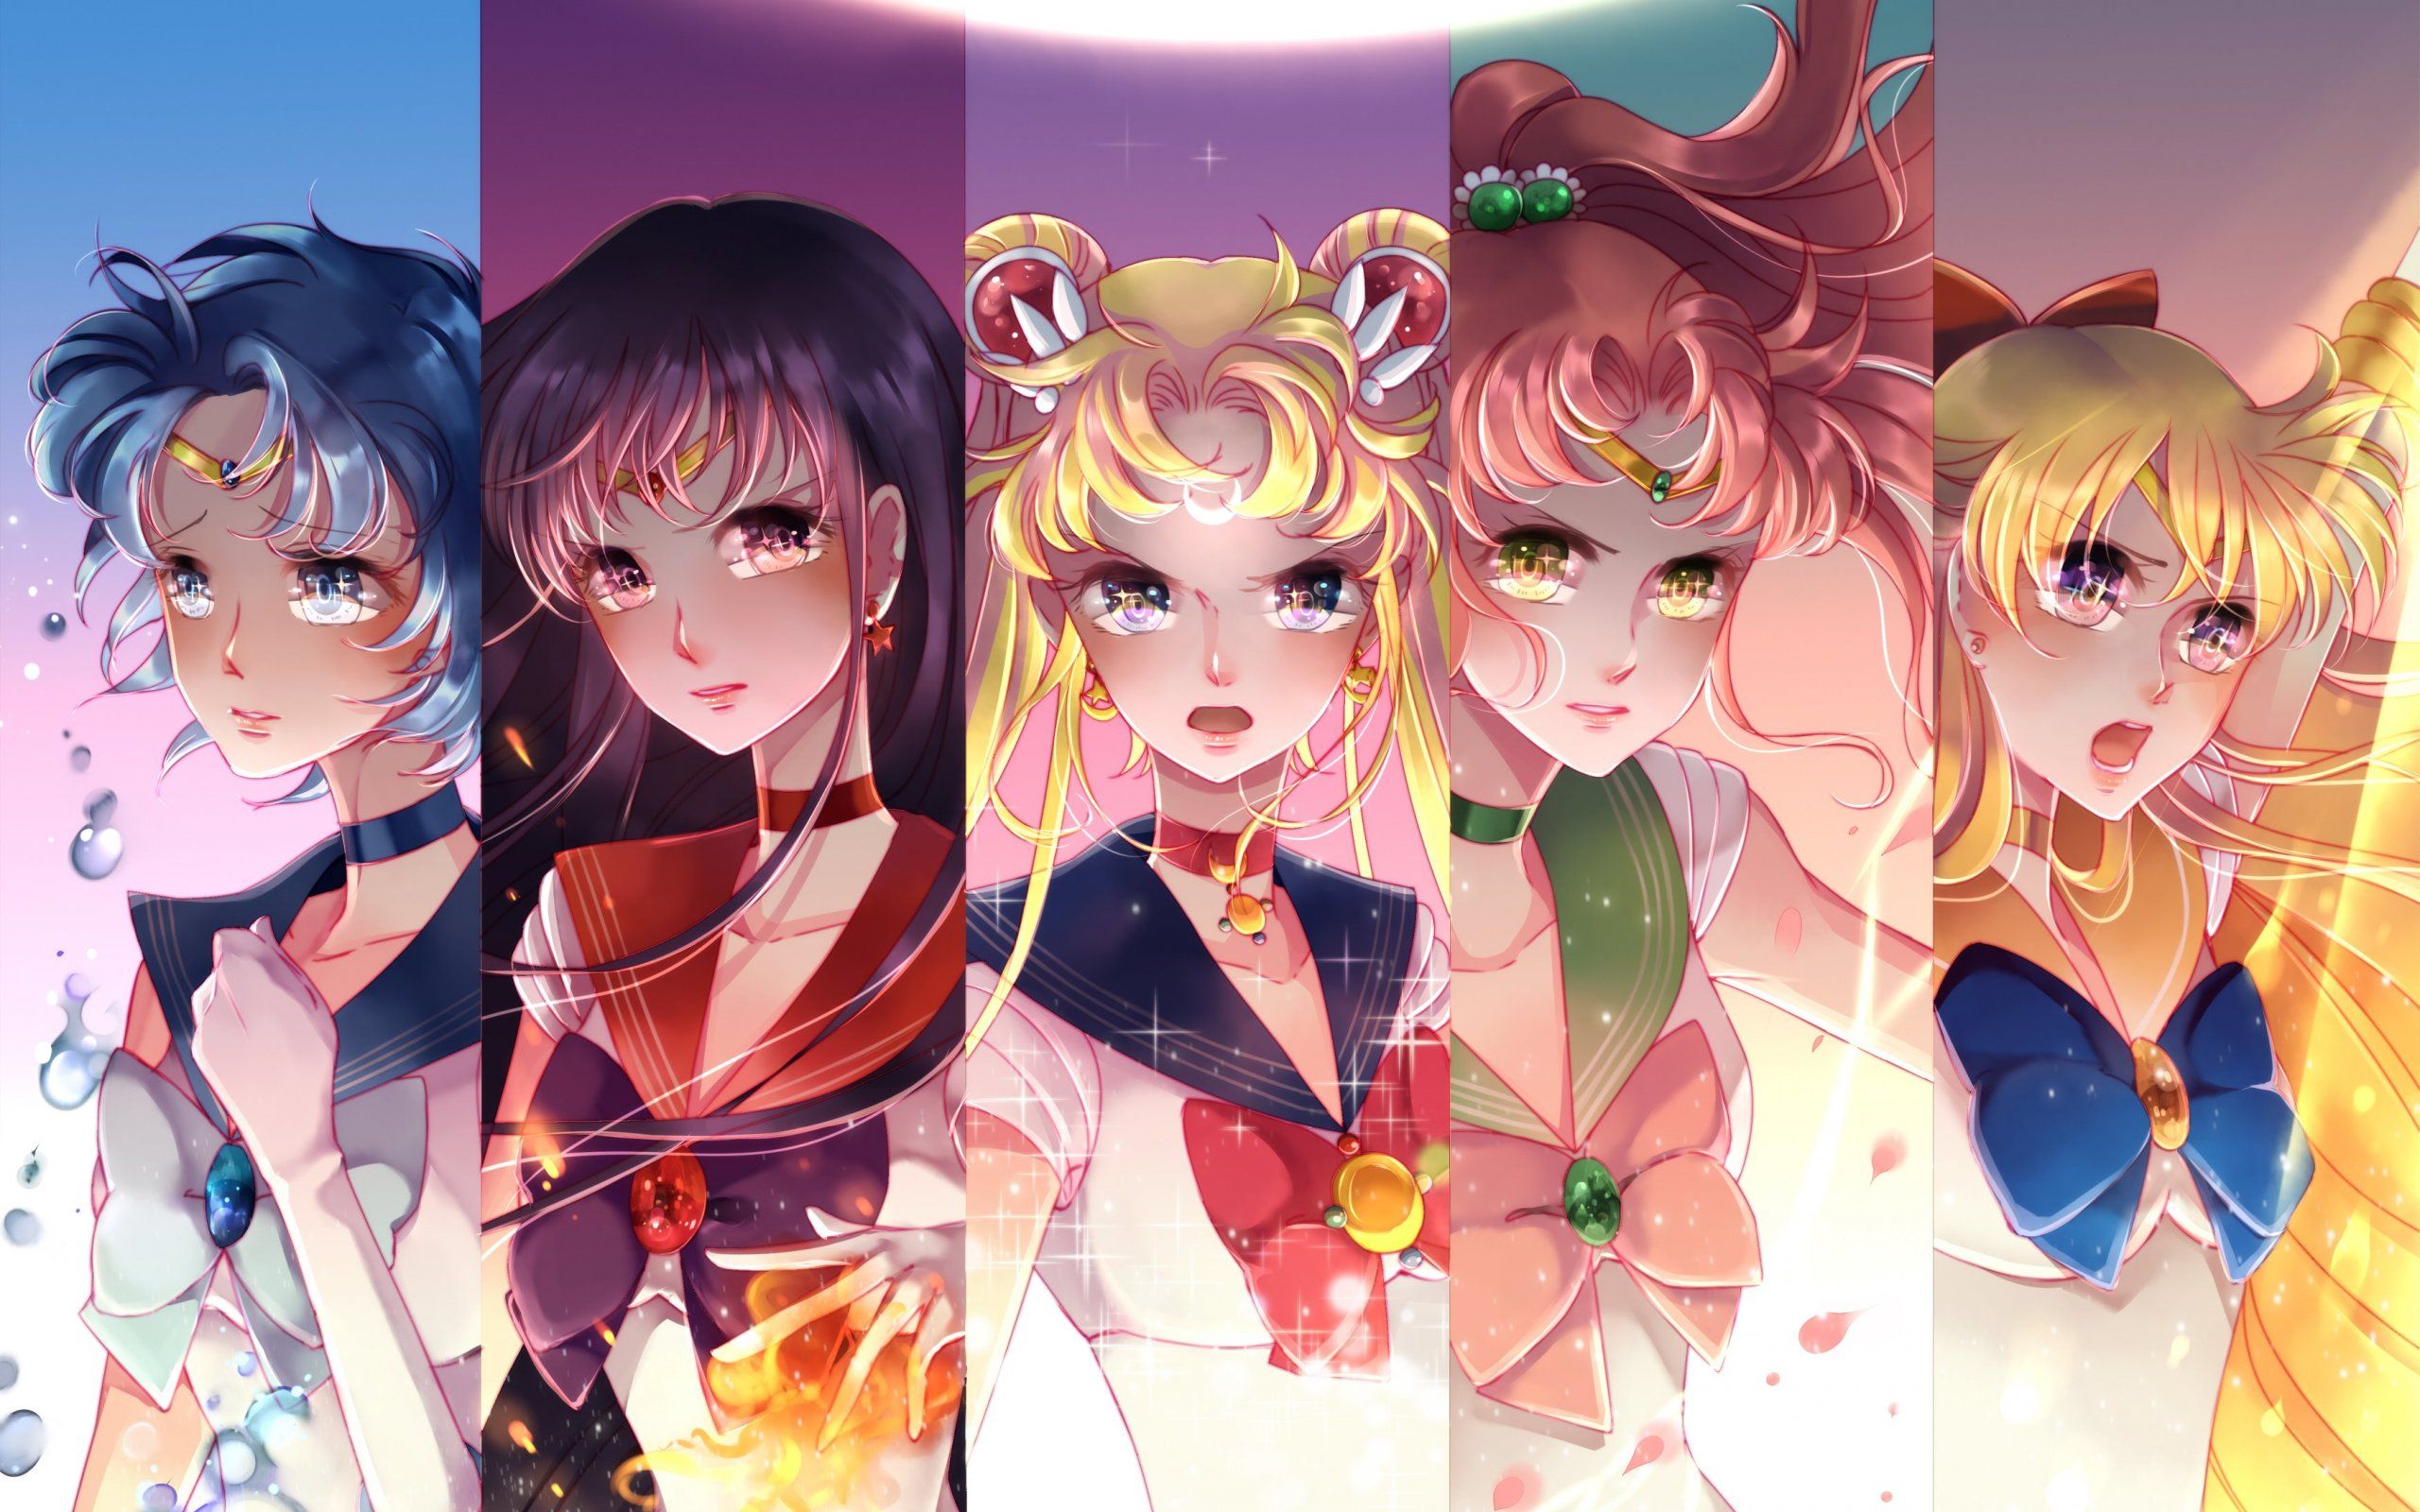 Fondo de pantalla de Sailor Moon | 2560x1600 | ID: 61592 - WallpaperVortex.com